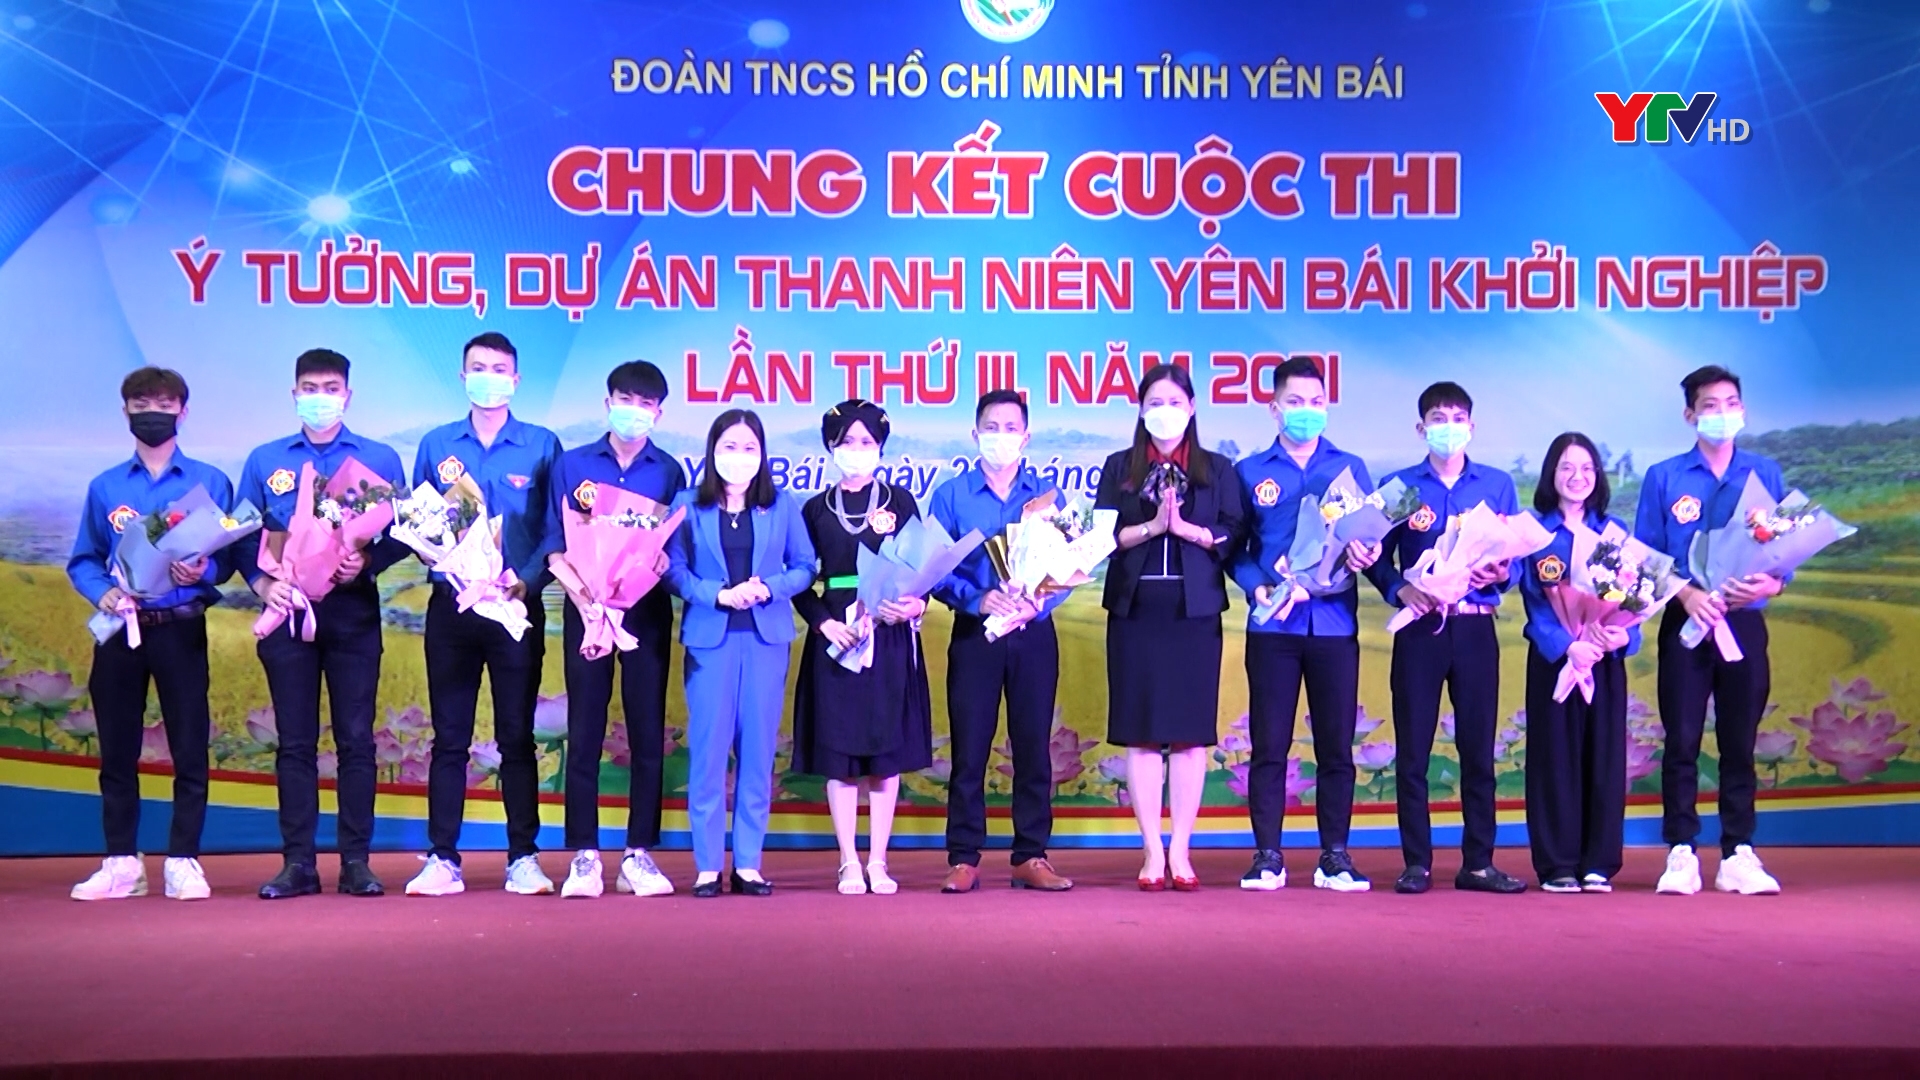 Chung kết cuộc thi ý tưởng, dự án thanh niên khởi nghiệp tỉnh Yên Bái năm 2021